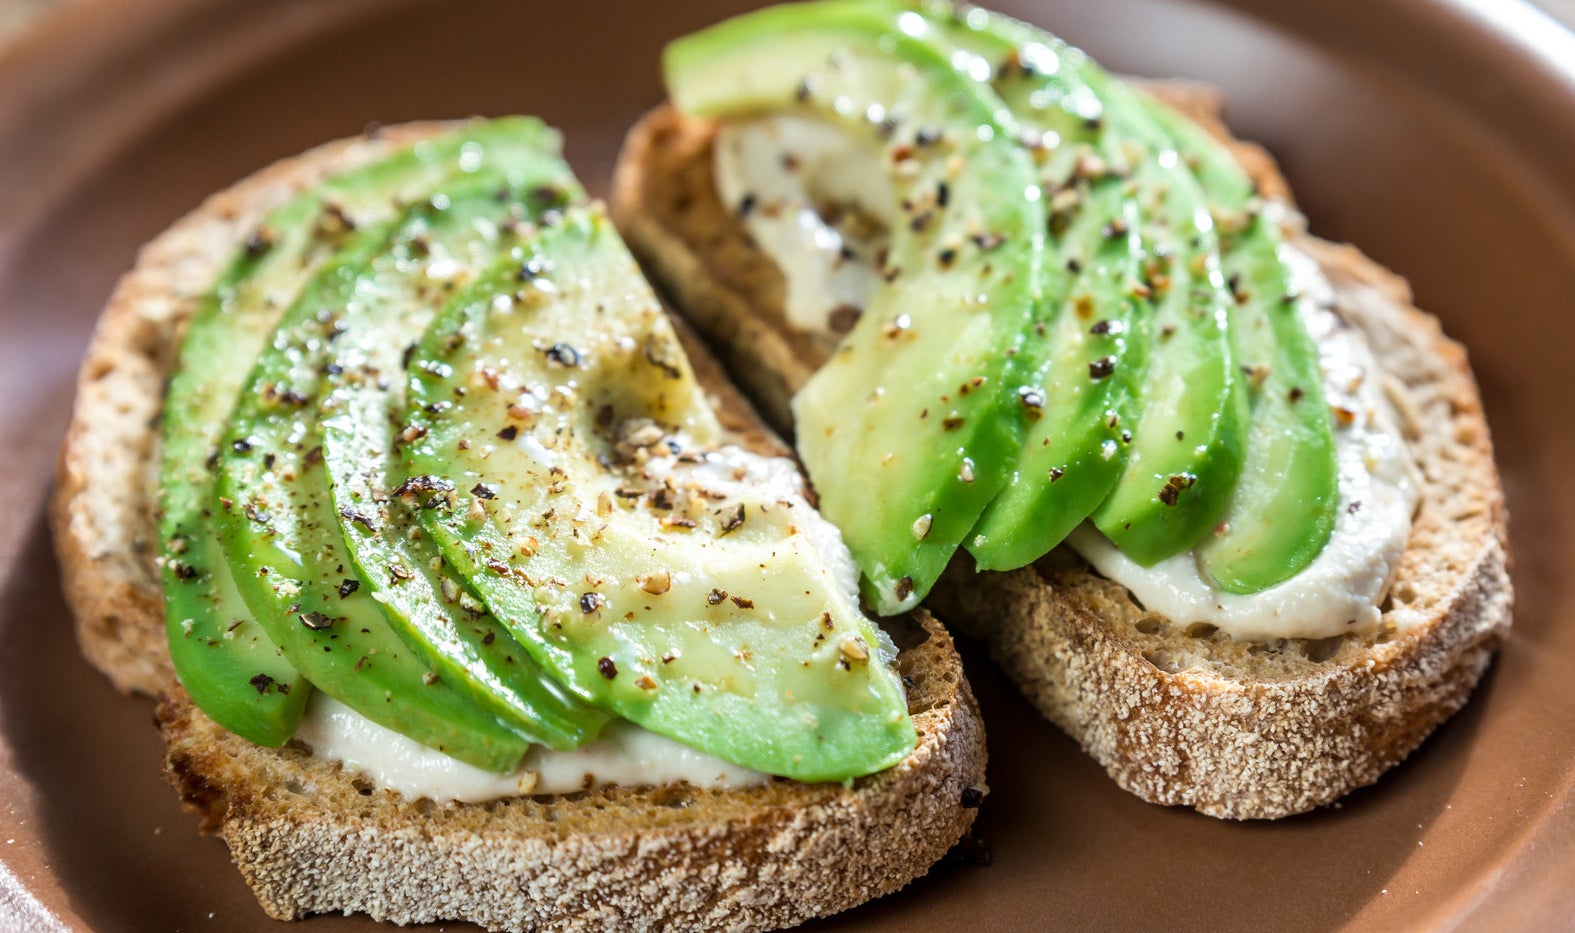 Stylish chuck for avocado toast